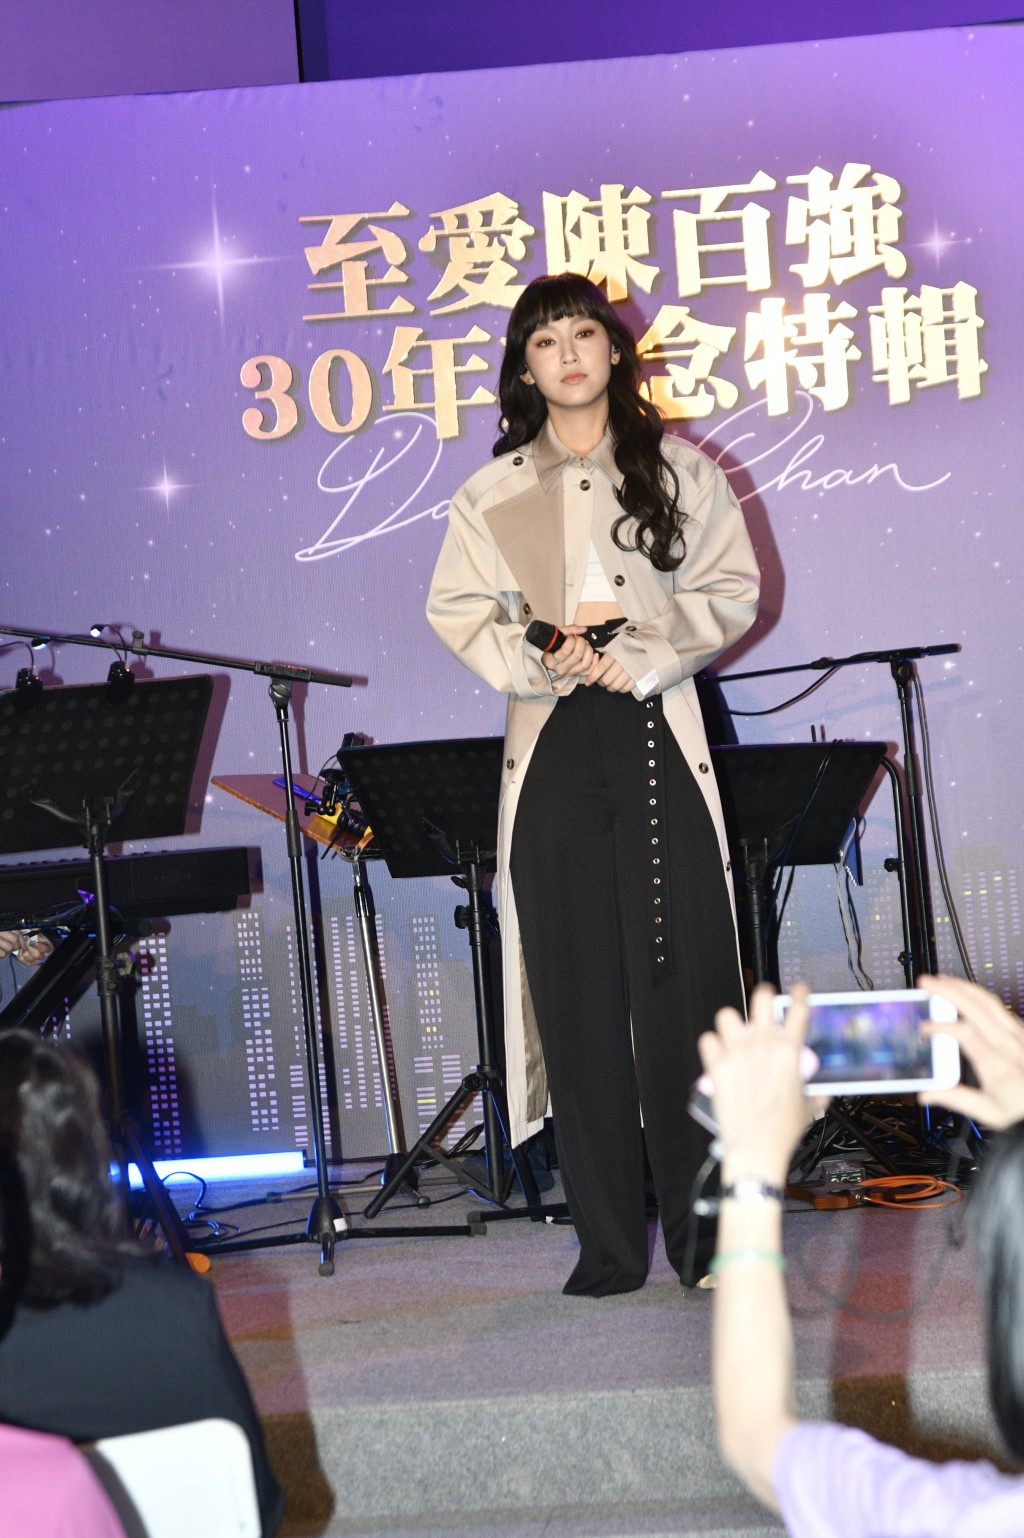 炎明熹打头阵献唱陈百强的经典歌曲《念亲恩》。